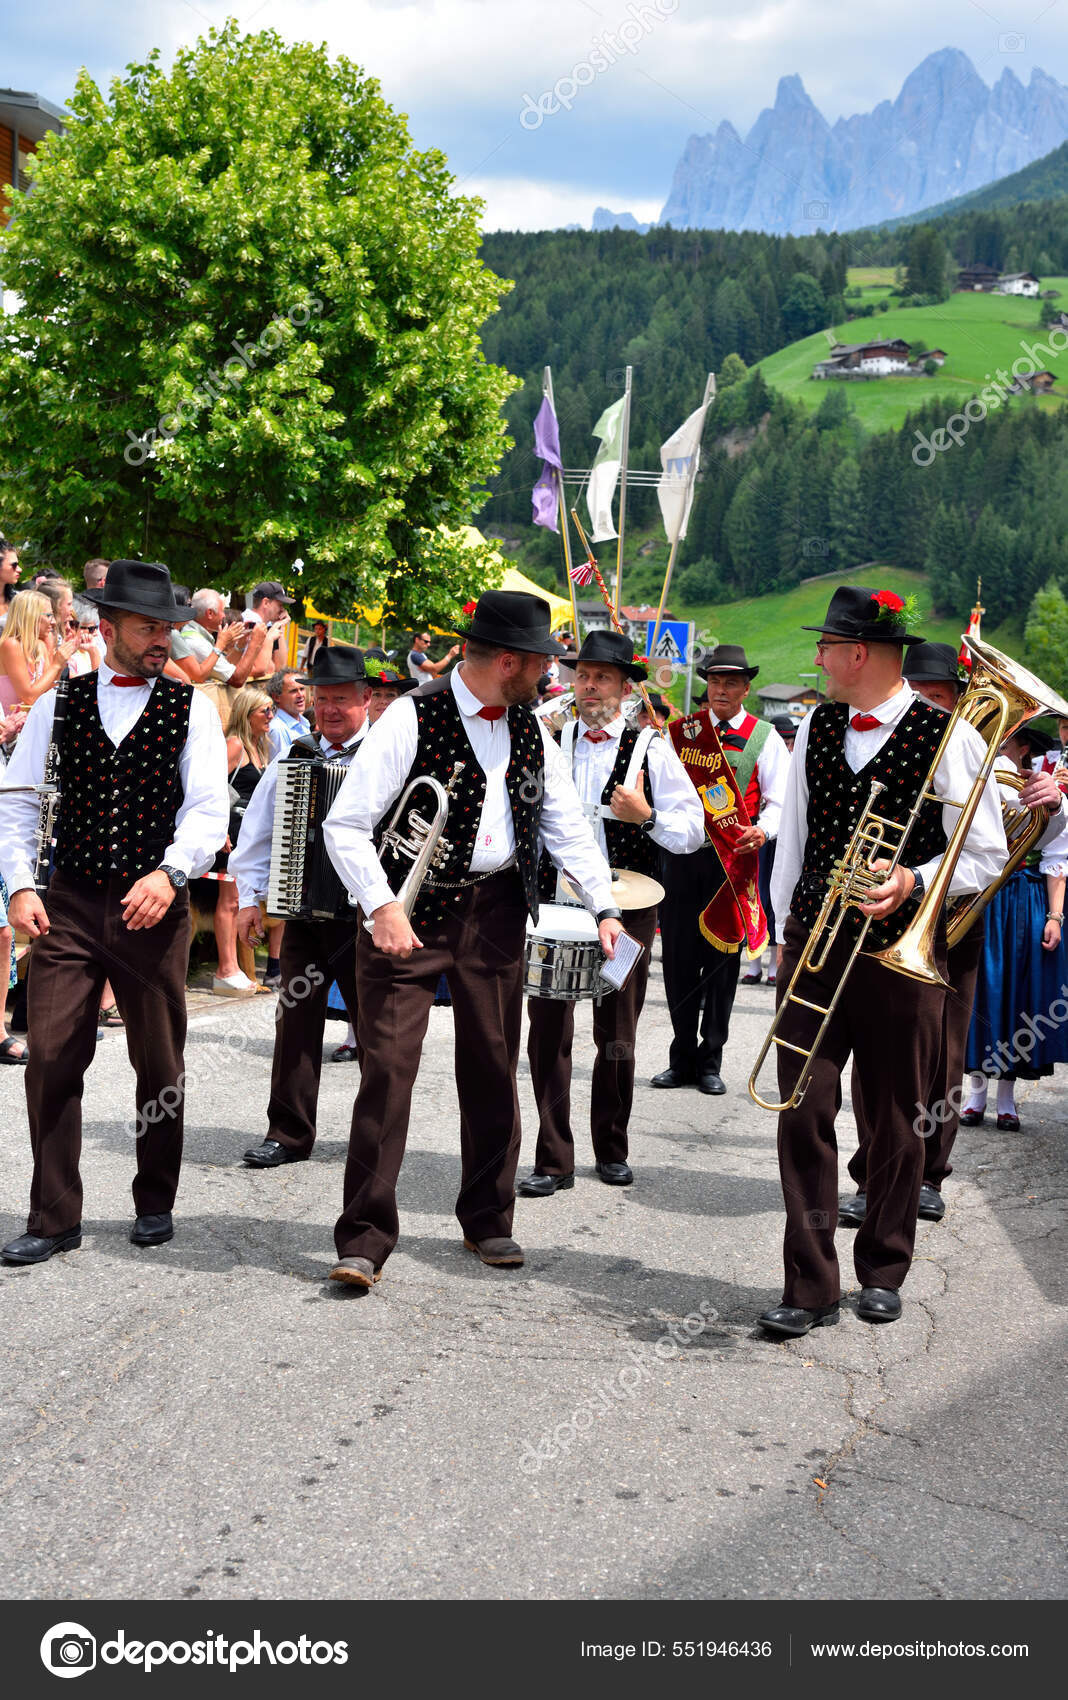 Orquesta Musical Traje Tirol Del Sur Cruza Todo País Tocando — Foto  editorial de stock © maudanros #551946436